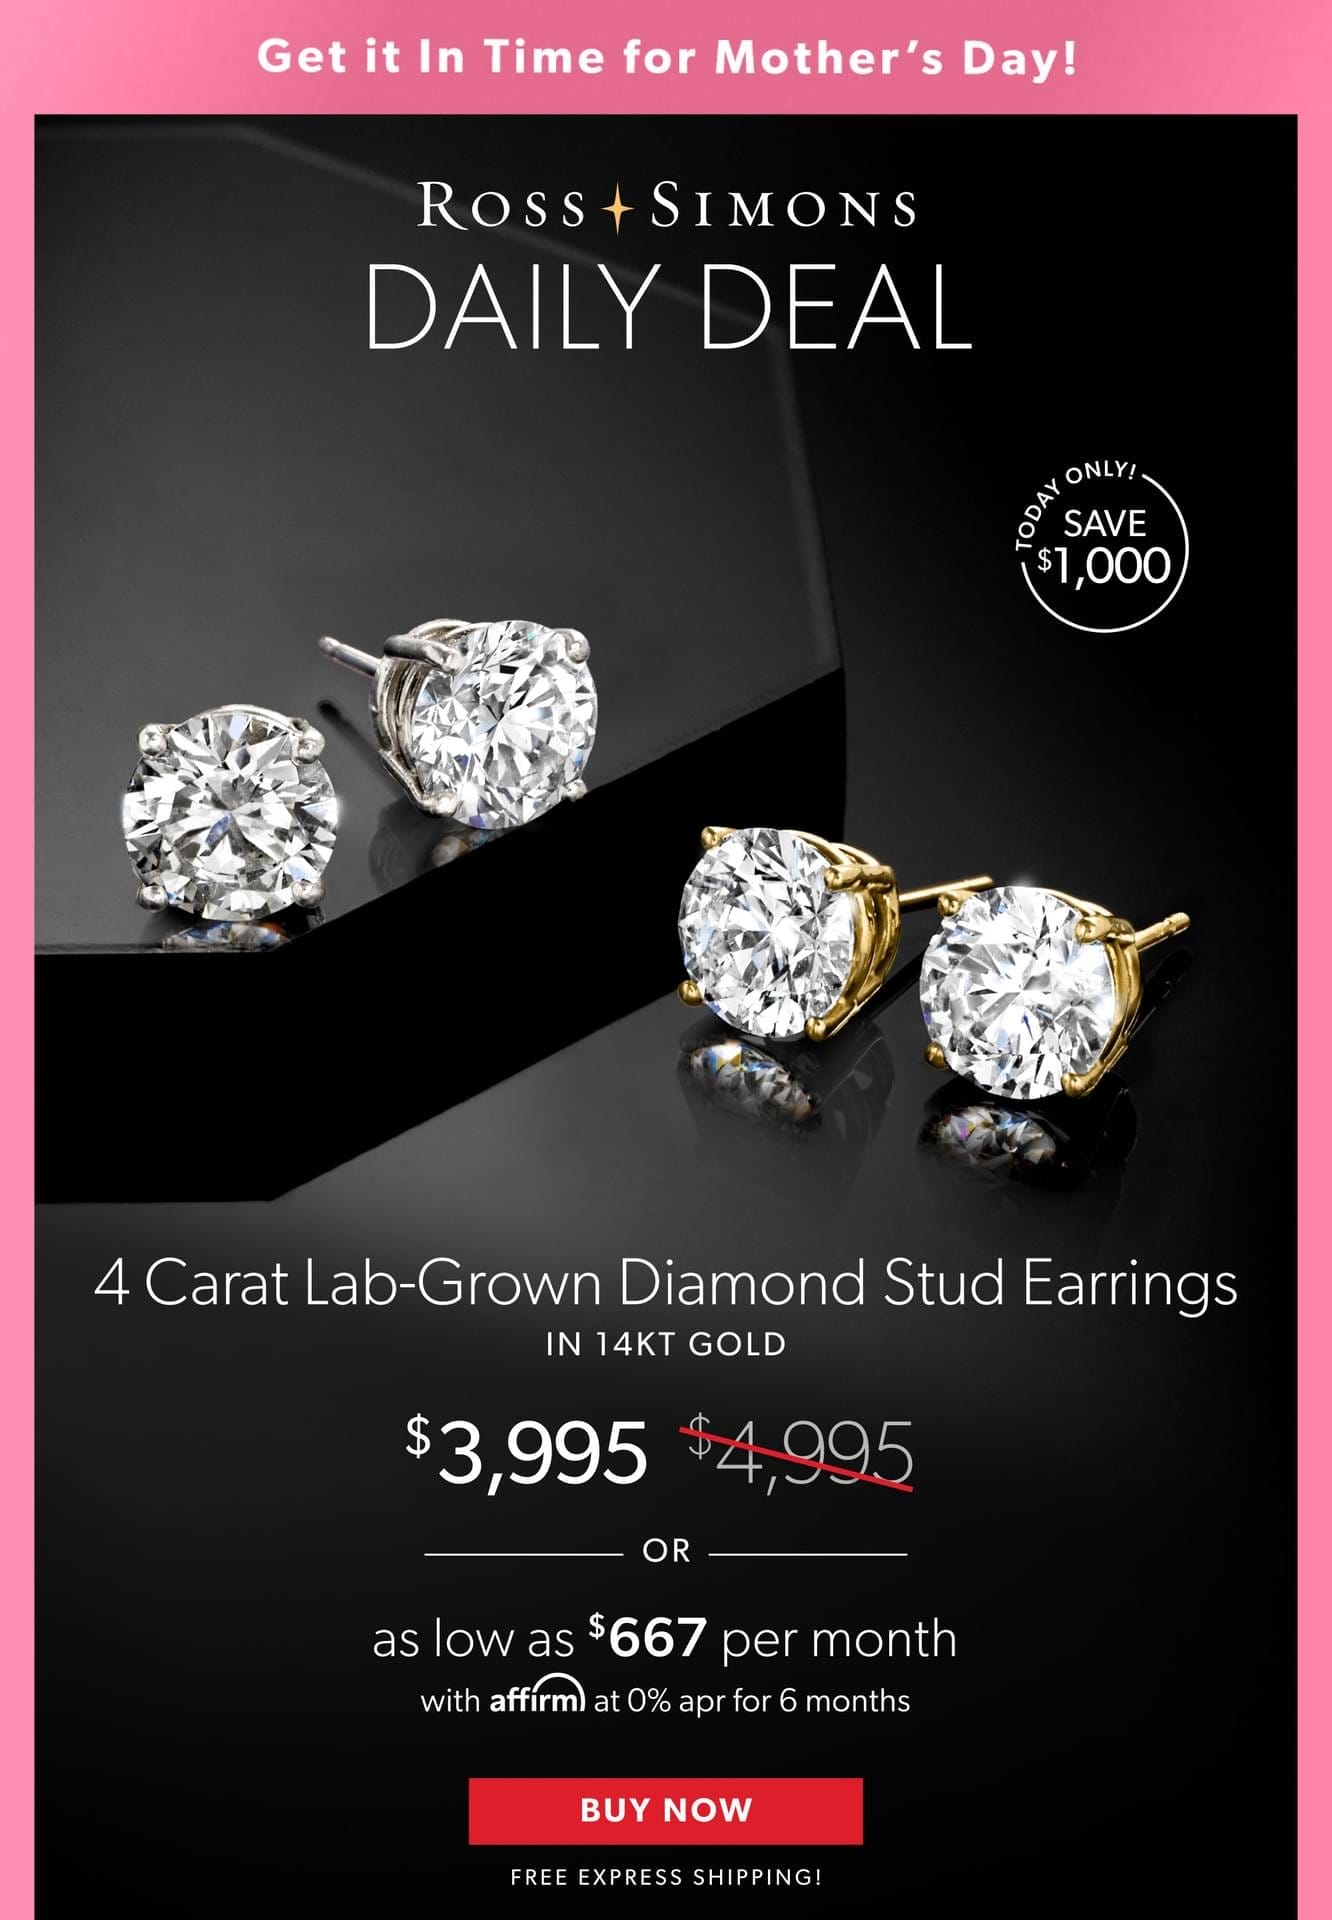 4 Carat Lab-Grown Diamond Stud Earrings in 14kt Gold